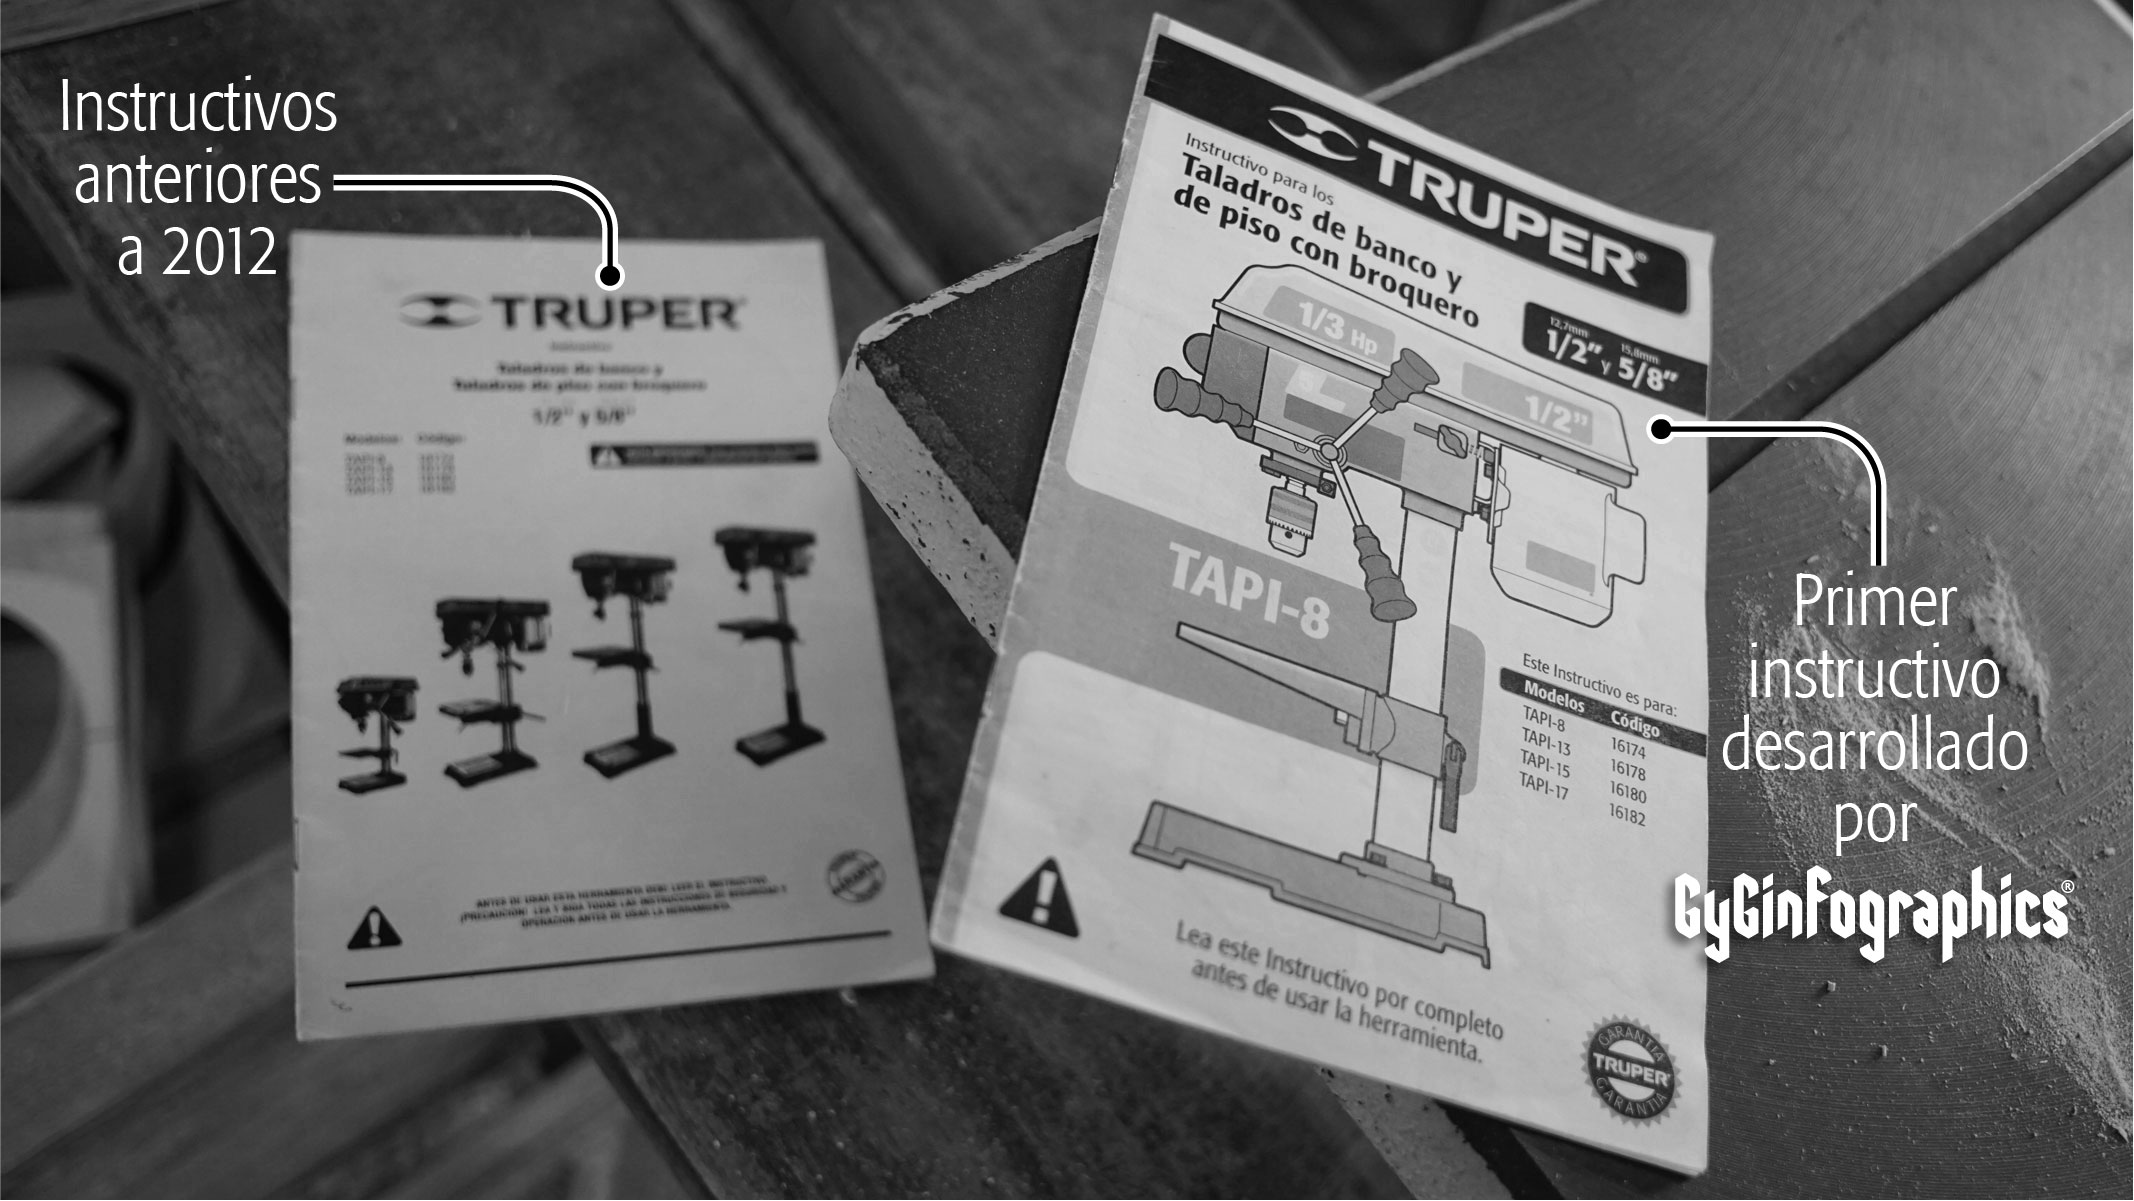 Fotografía en blanco y negro con una comparativa entre las portadas de los antiguos y los actuales instructivos de las herramientas Truper.